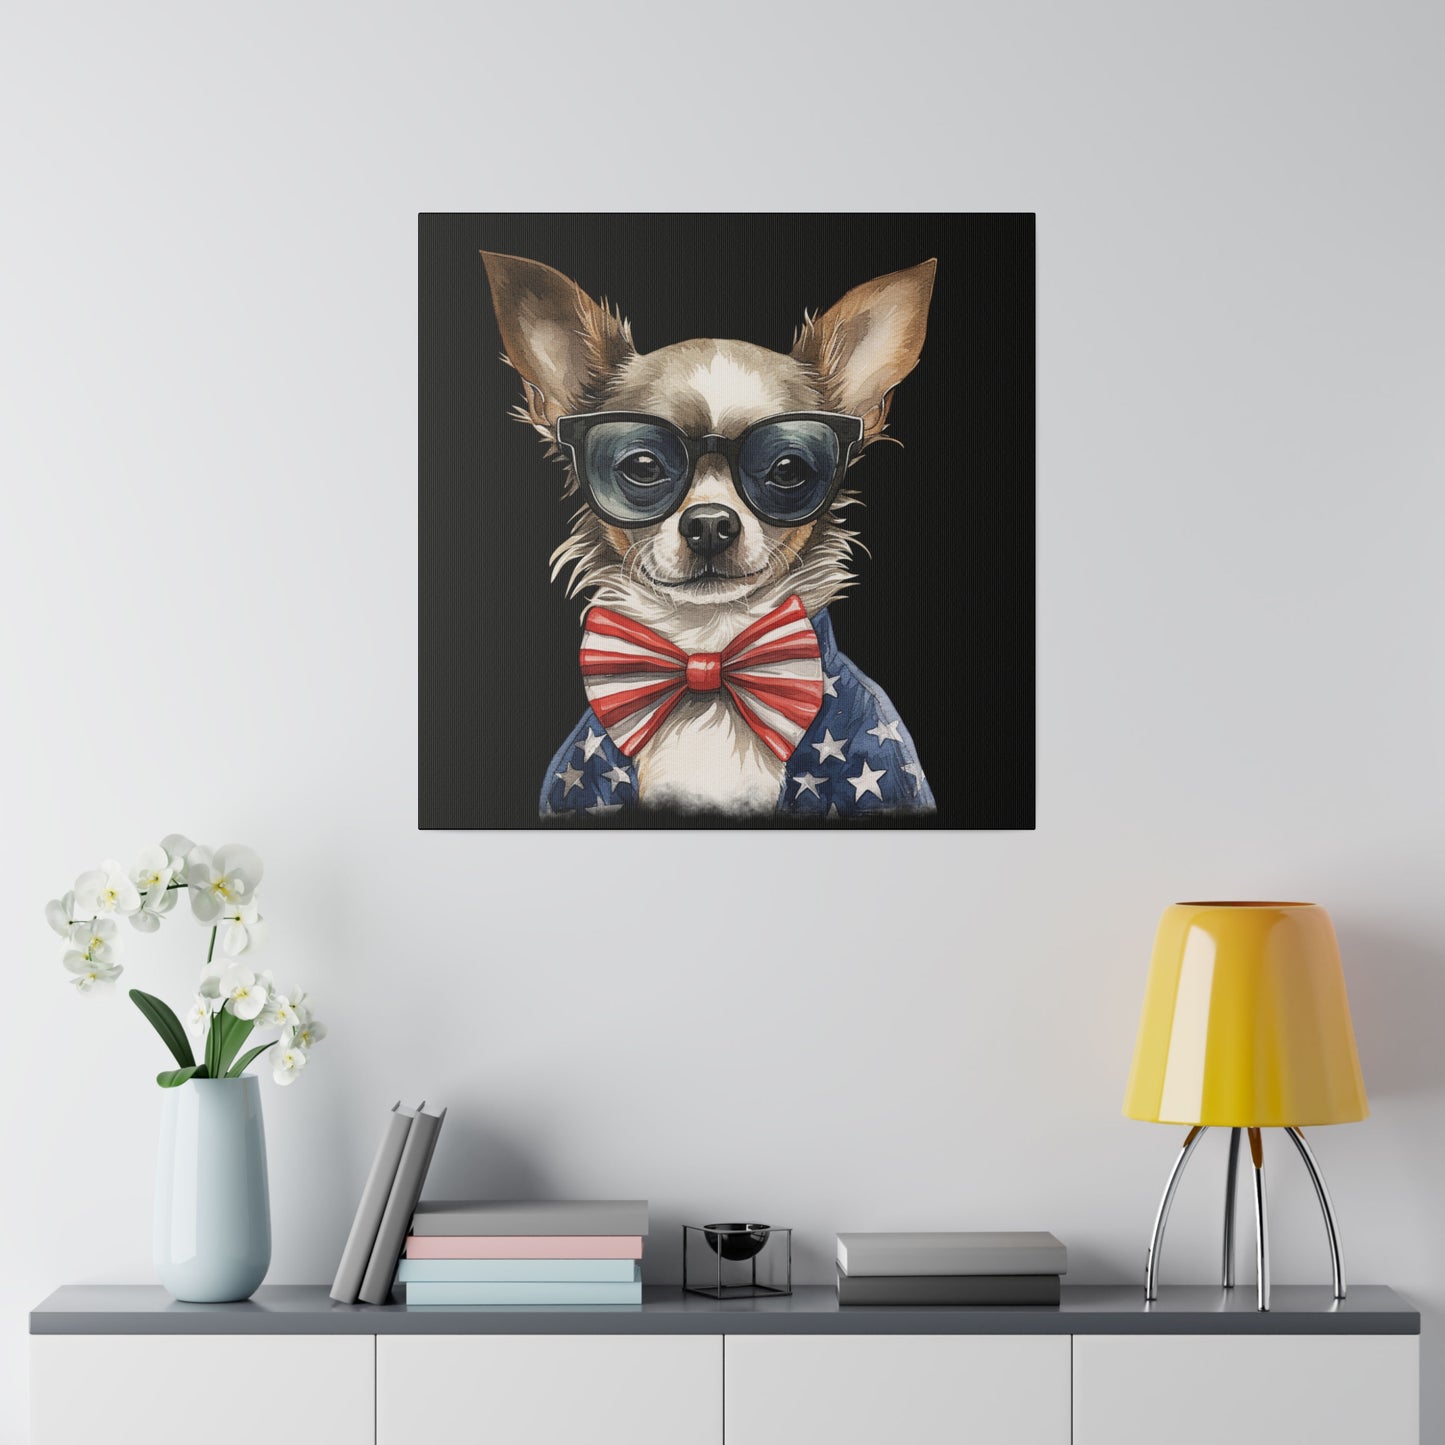 Patriotic Chihuahua Canvas Wall Art